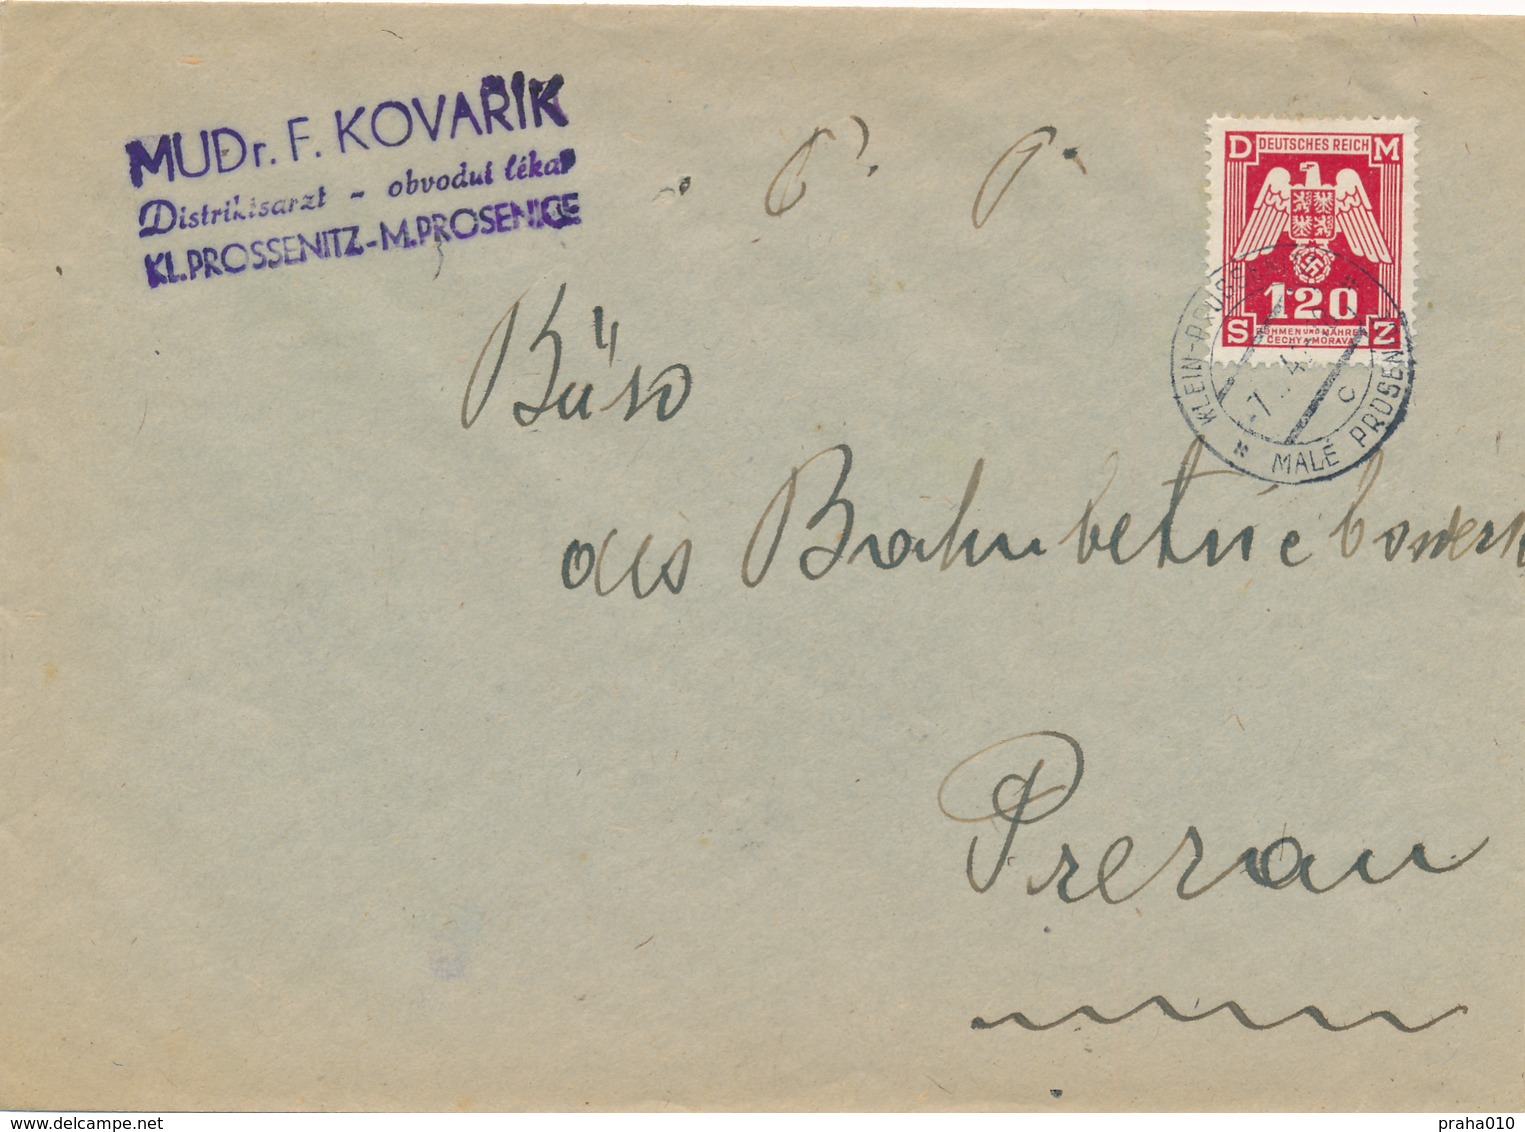 BuM (IMG2981) - Böhmen Und Mähren (1943) Klein-Prossenitz - Male Prosenice (letter) Tariff: 1,20 K - Briefe U. Dokumente